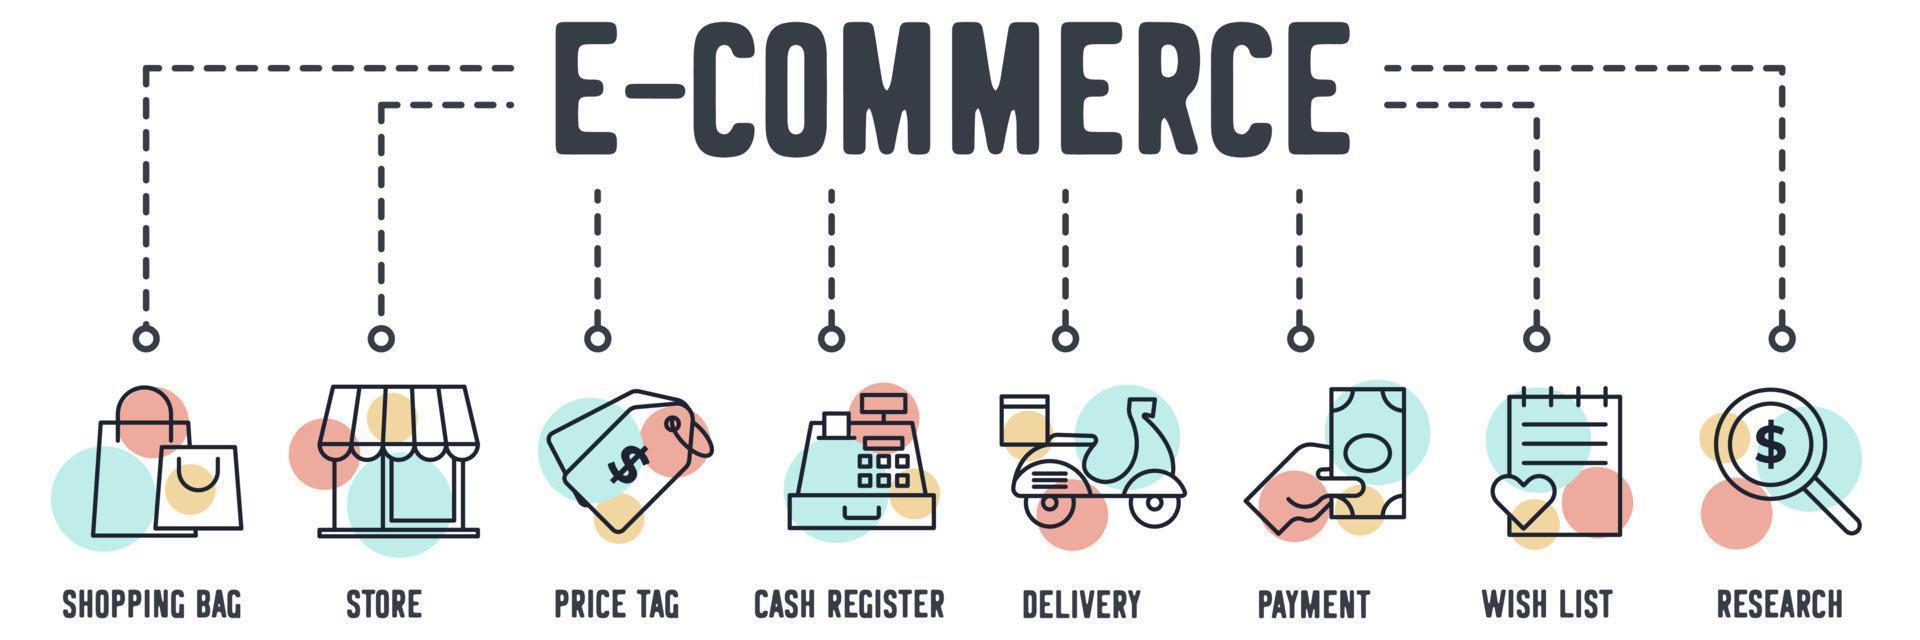 e-commerce online winkelen banner webpictogram. boodschappentas, winkel, prijskaartje, kassa, levering, betaling, verlanglijstje, onderzoek vector illustratie concept.